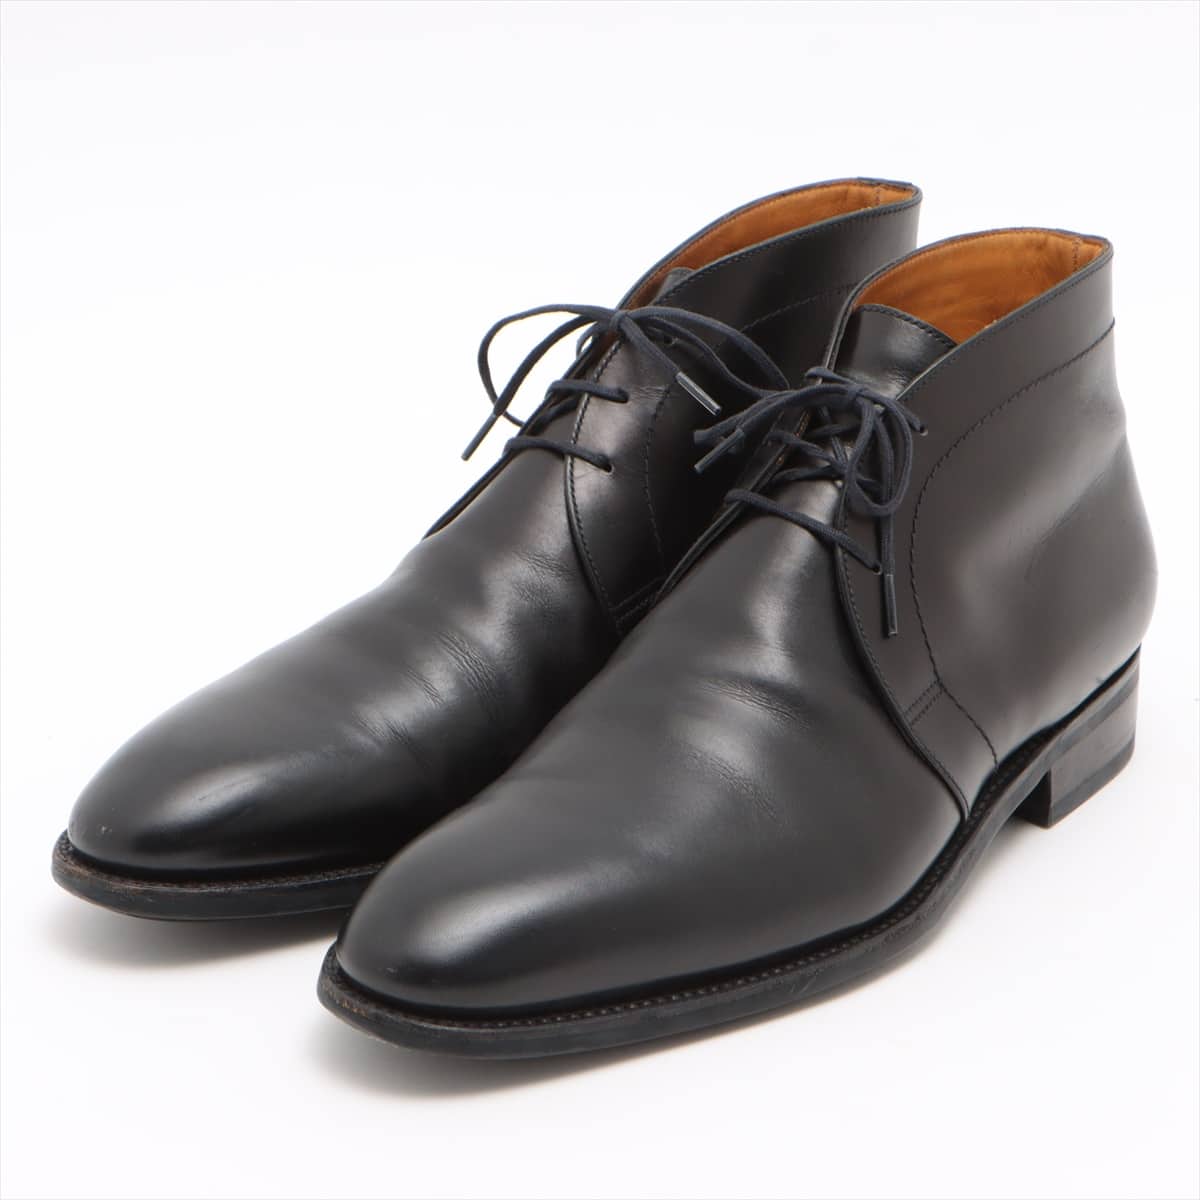 J. M. Weston Leather Chukka Boots 6E Men's Black PROTEGE 473